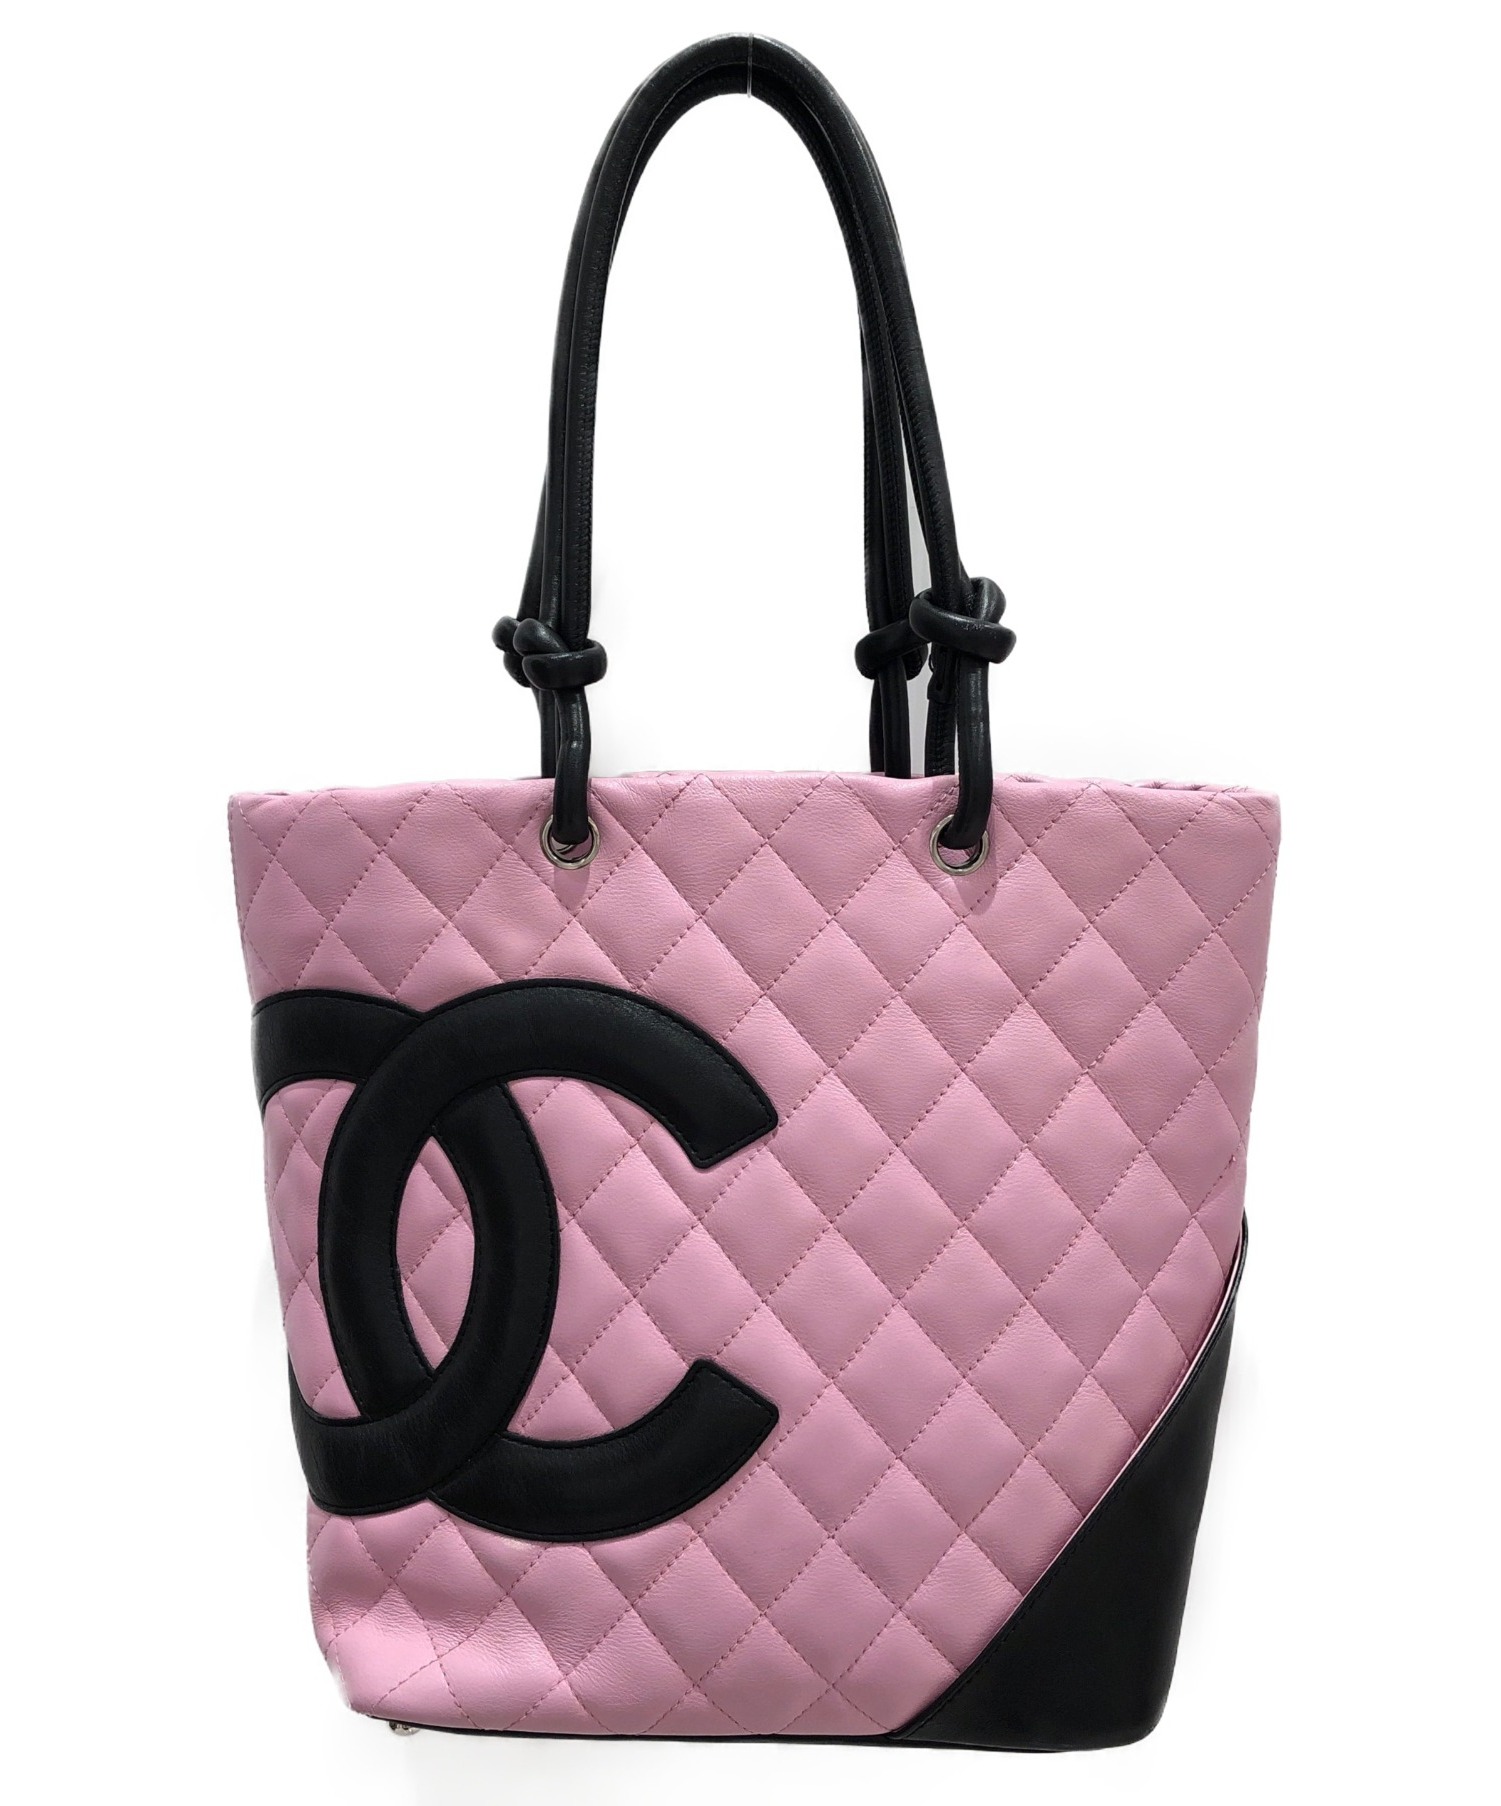 中古 古着通販 Chanel シャネル カンボン トートバッグ ピンク サイズ ブランド 古着通販 トレファク公式 Trefac Fashion